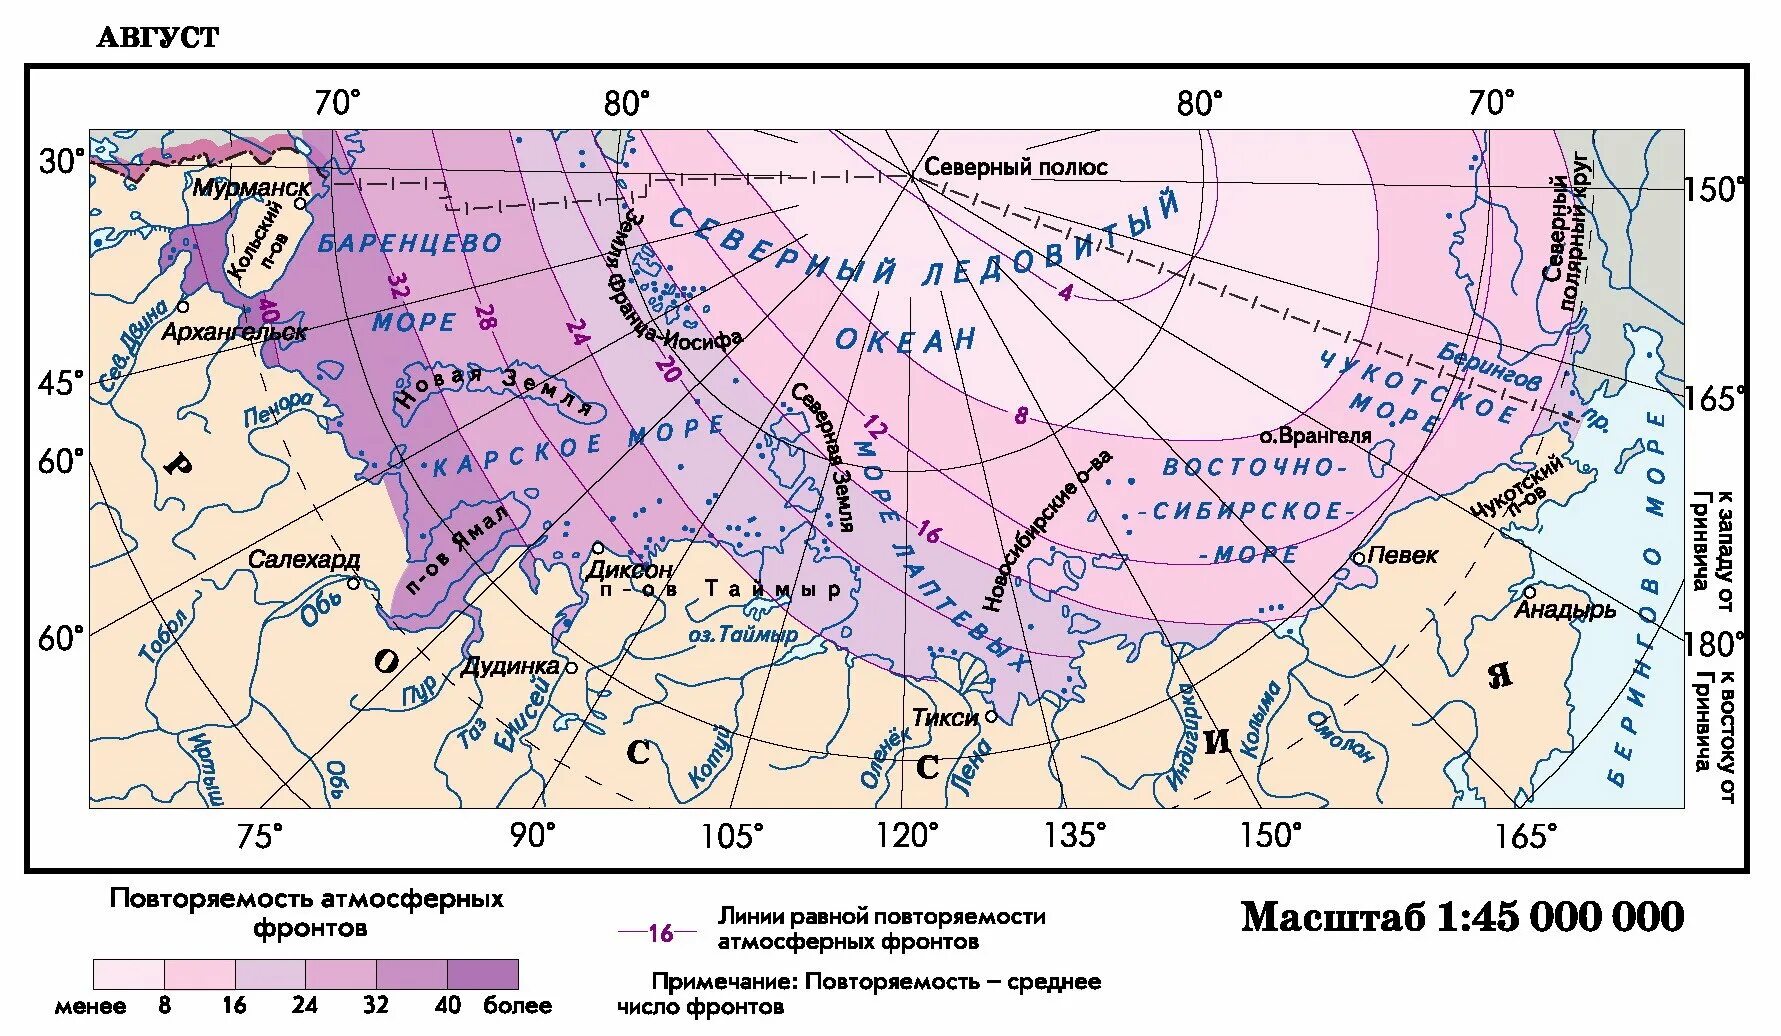 Баренцево море климатический пояс. Климатические пояса Северного Ледовитого океана карта. Климатическая карта Арктики. Атмосферный фронт.